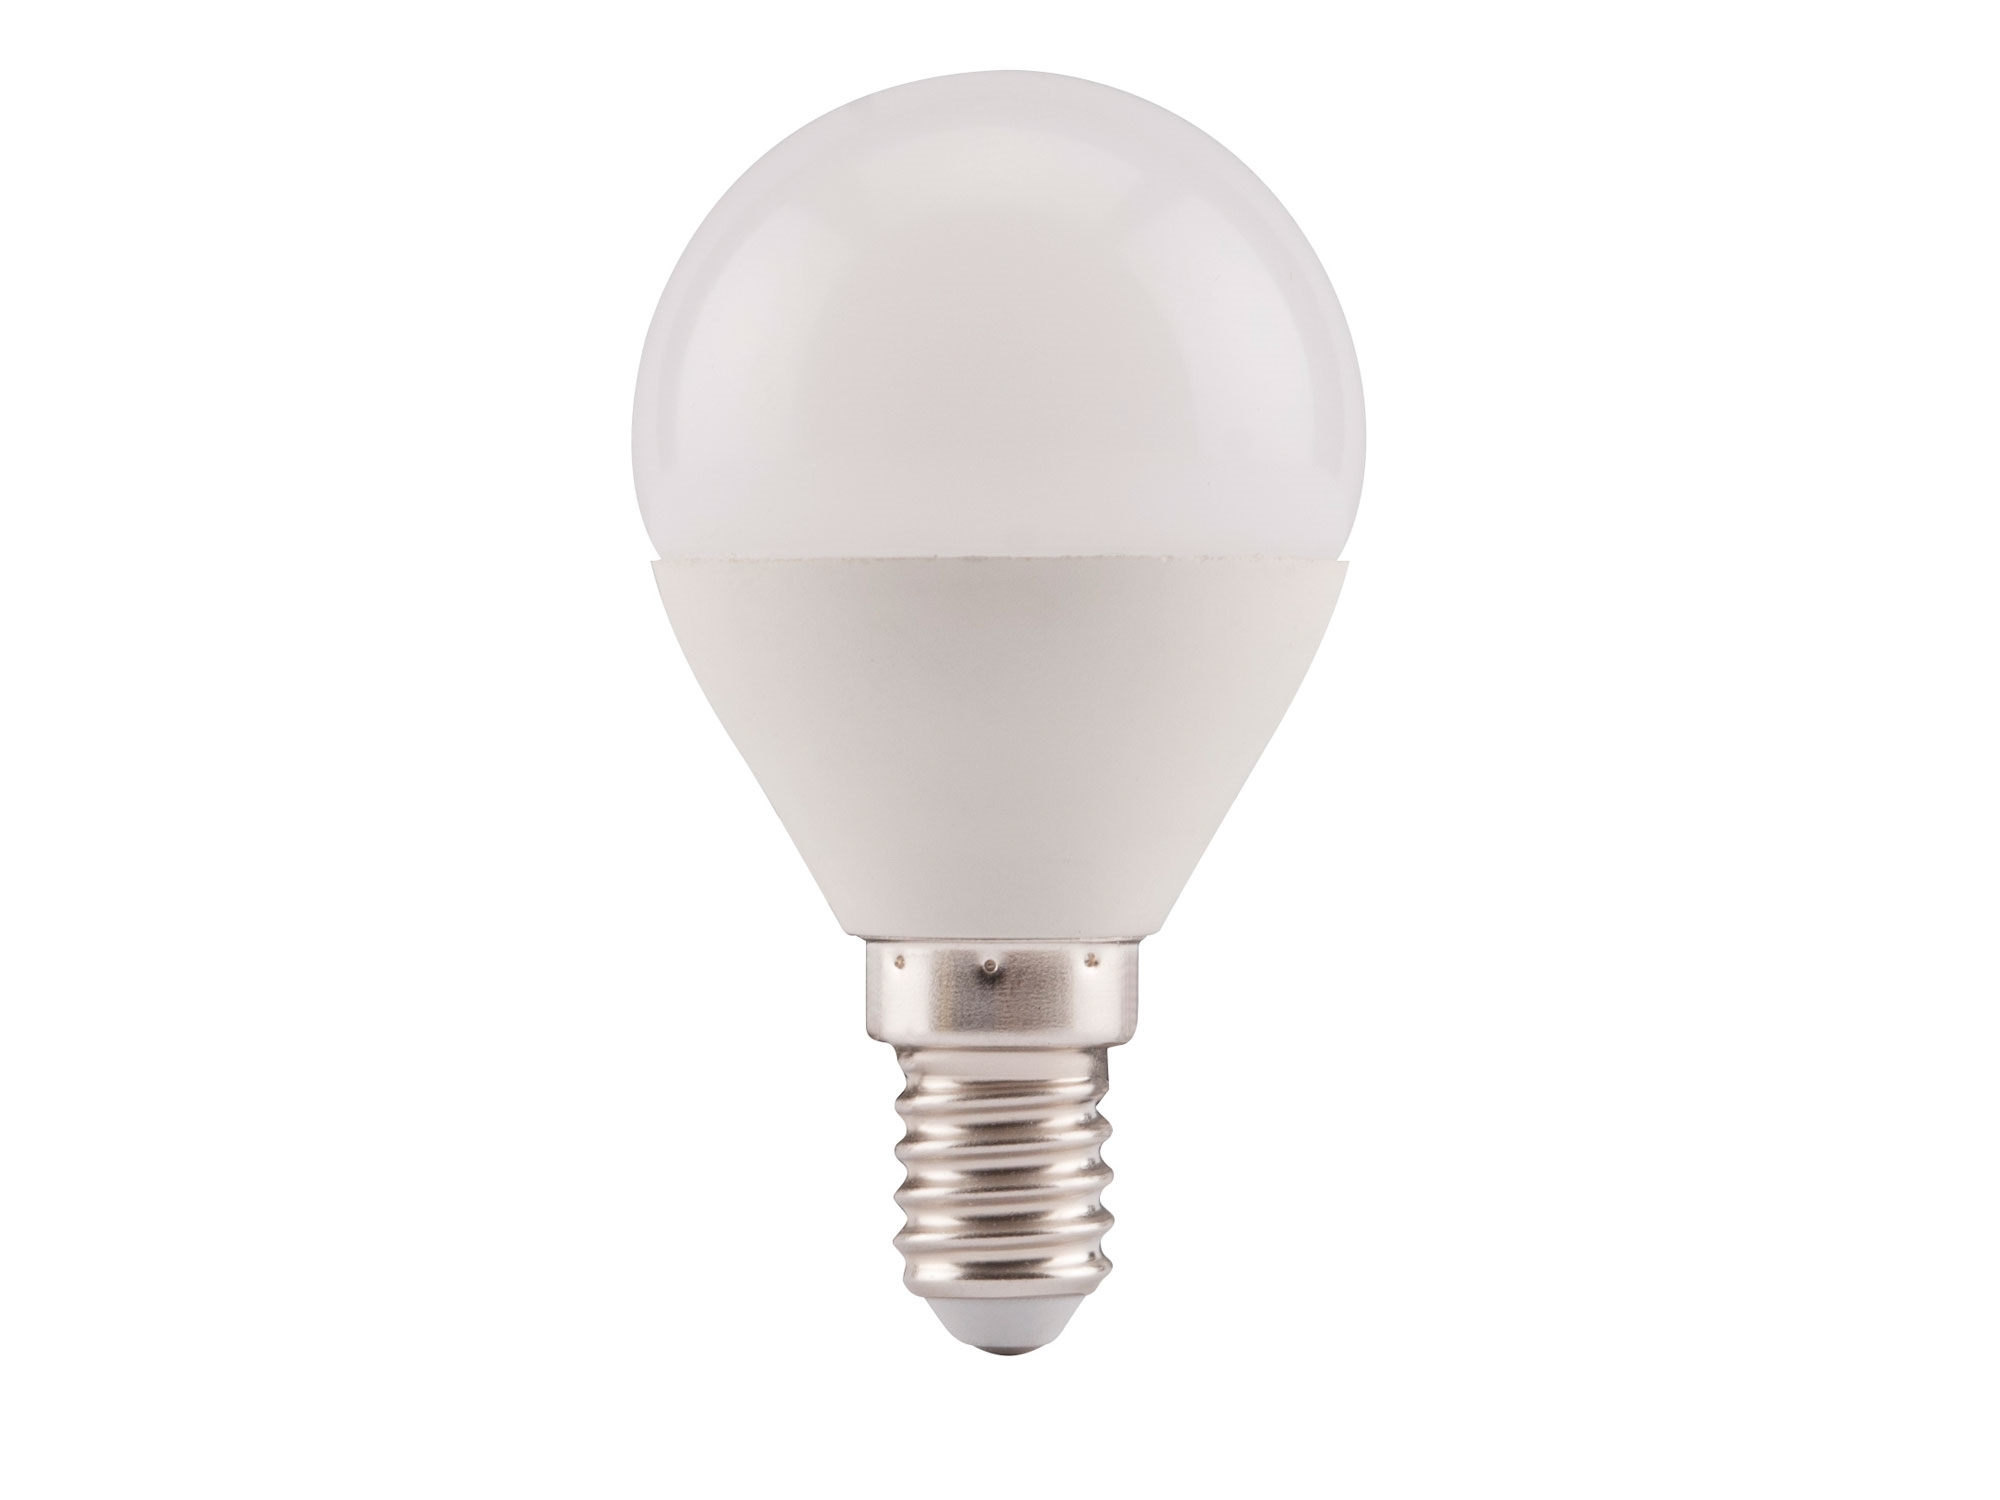 žárovka LED mini, 5W, 410lm, E14, teplá bílá